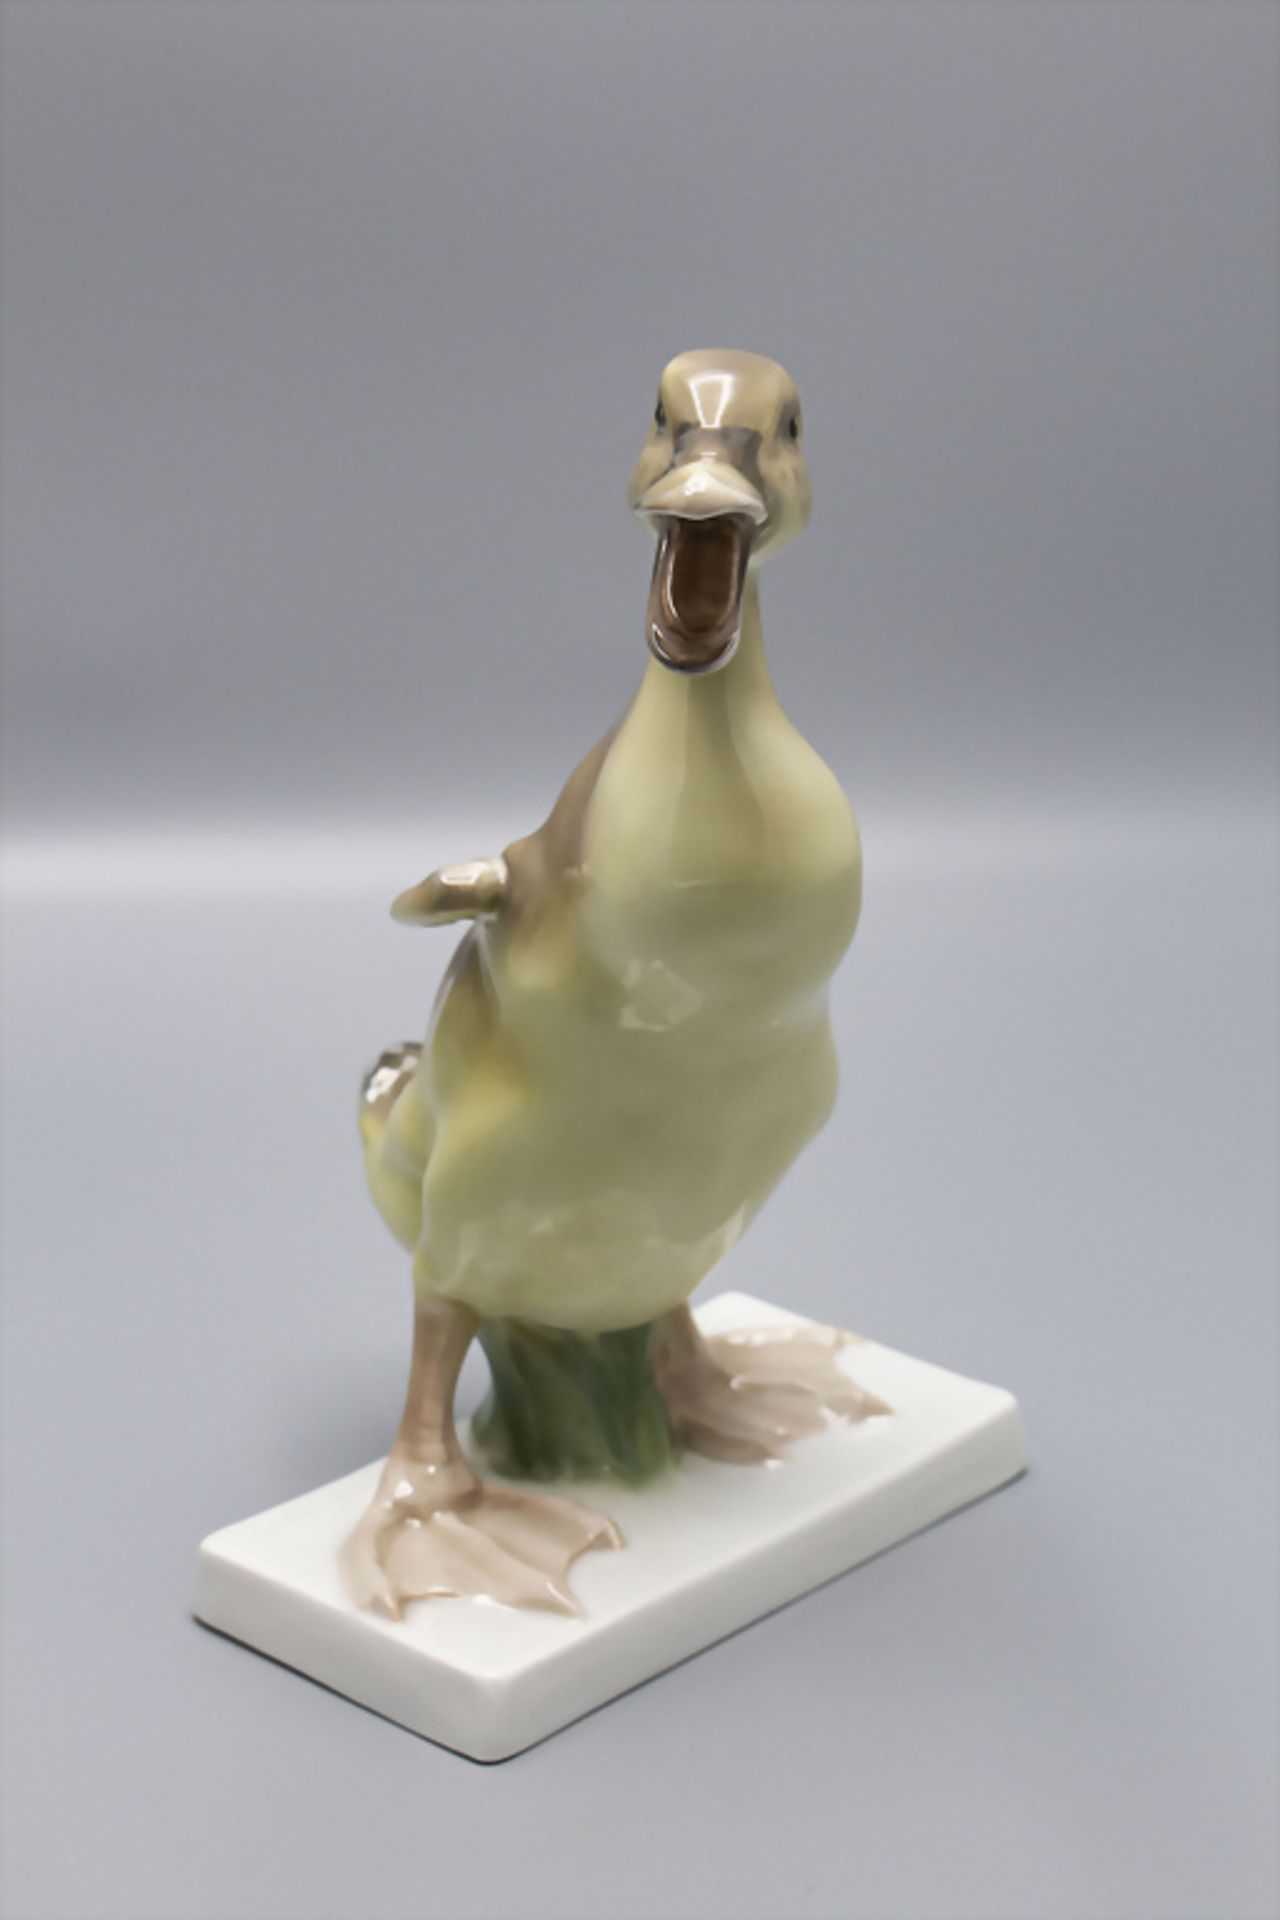 Vogelfigur 'Entenküken' / A duckling, Karl Himmelstoss, Rosenthal, Selb, um 1930 - Image 5 of 8